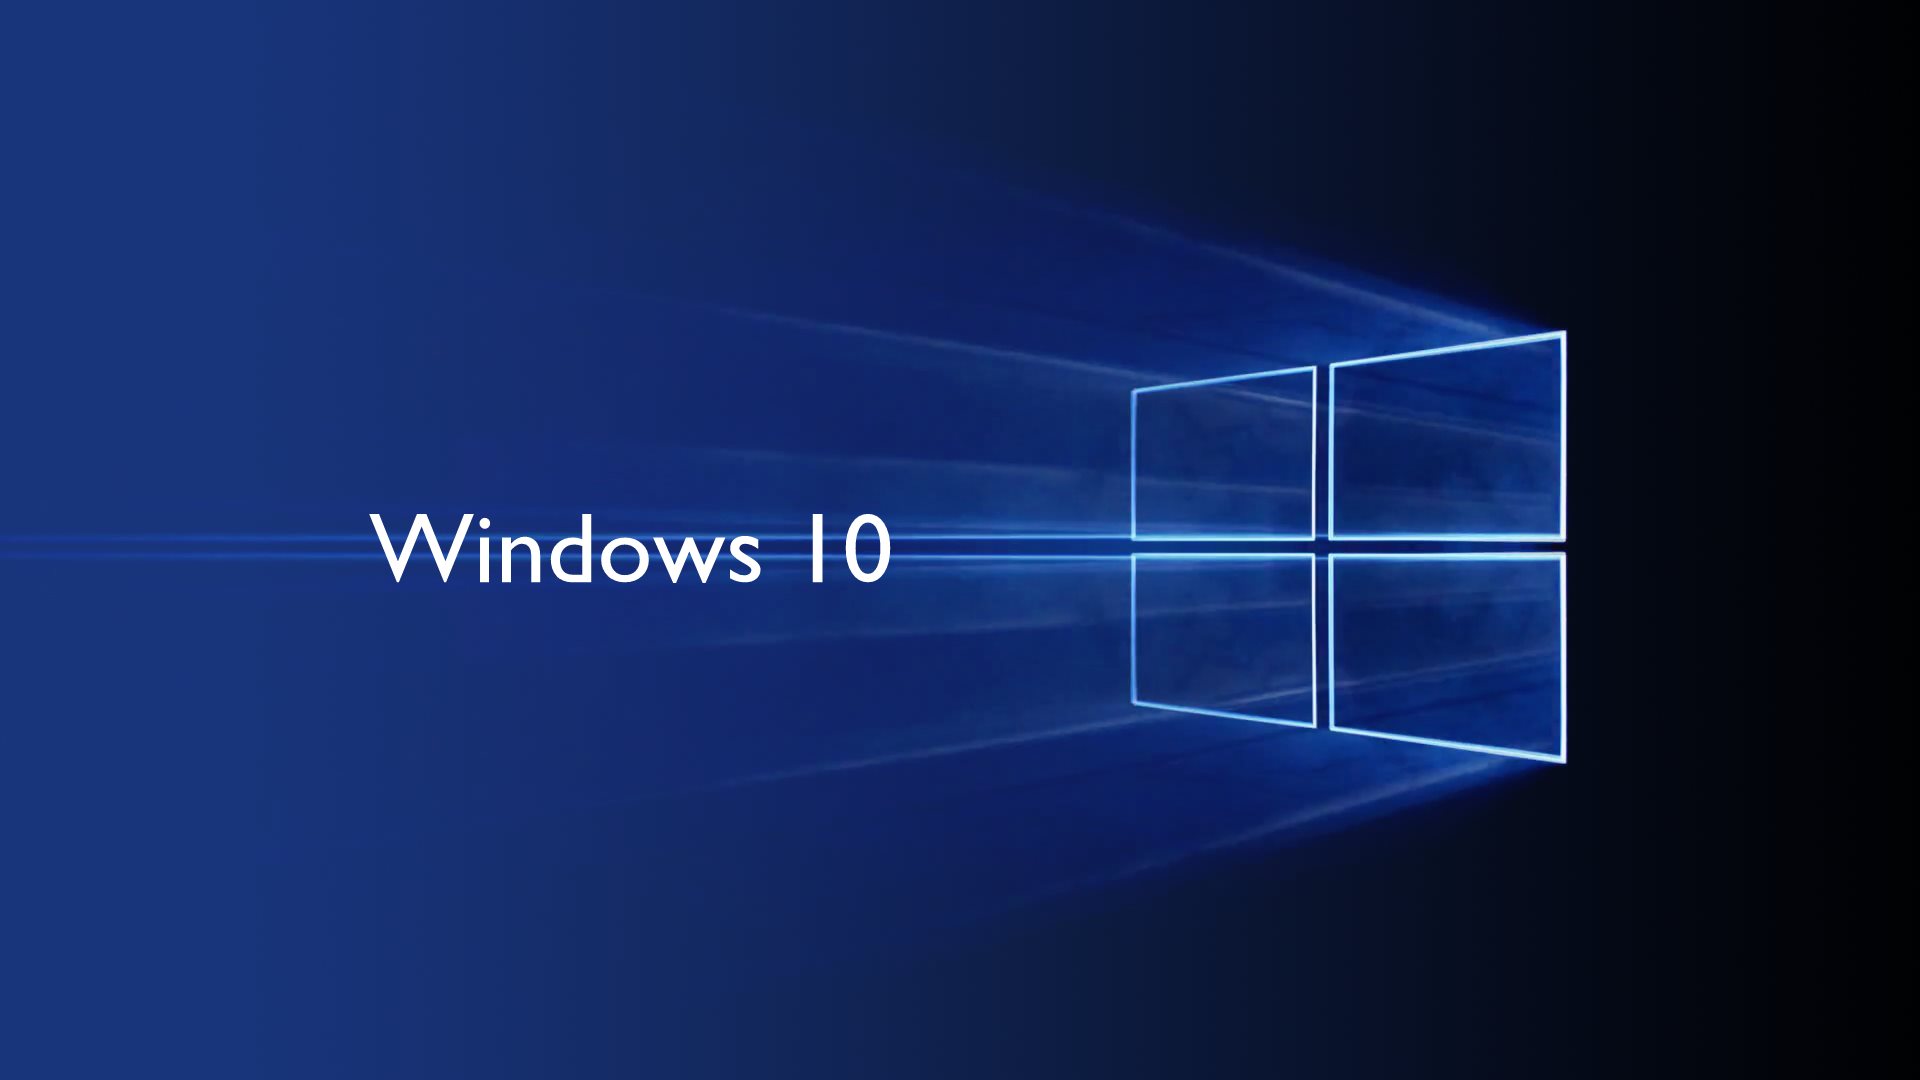 Vòng đời của hệ điều hành Windows 10 sắp kết thúc